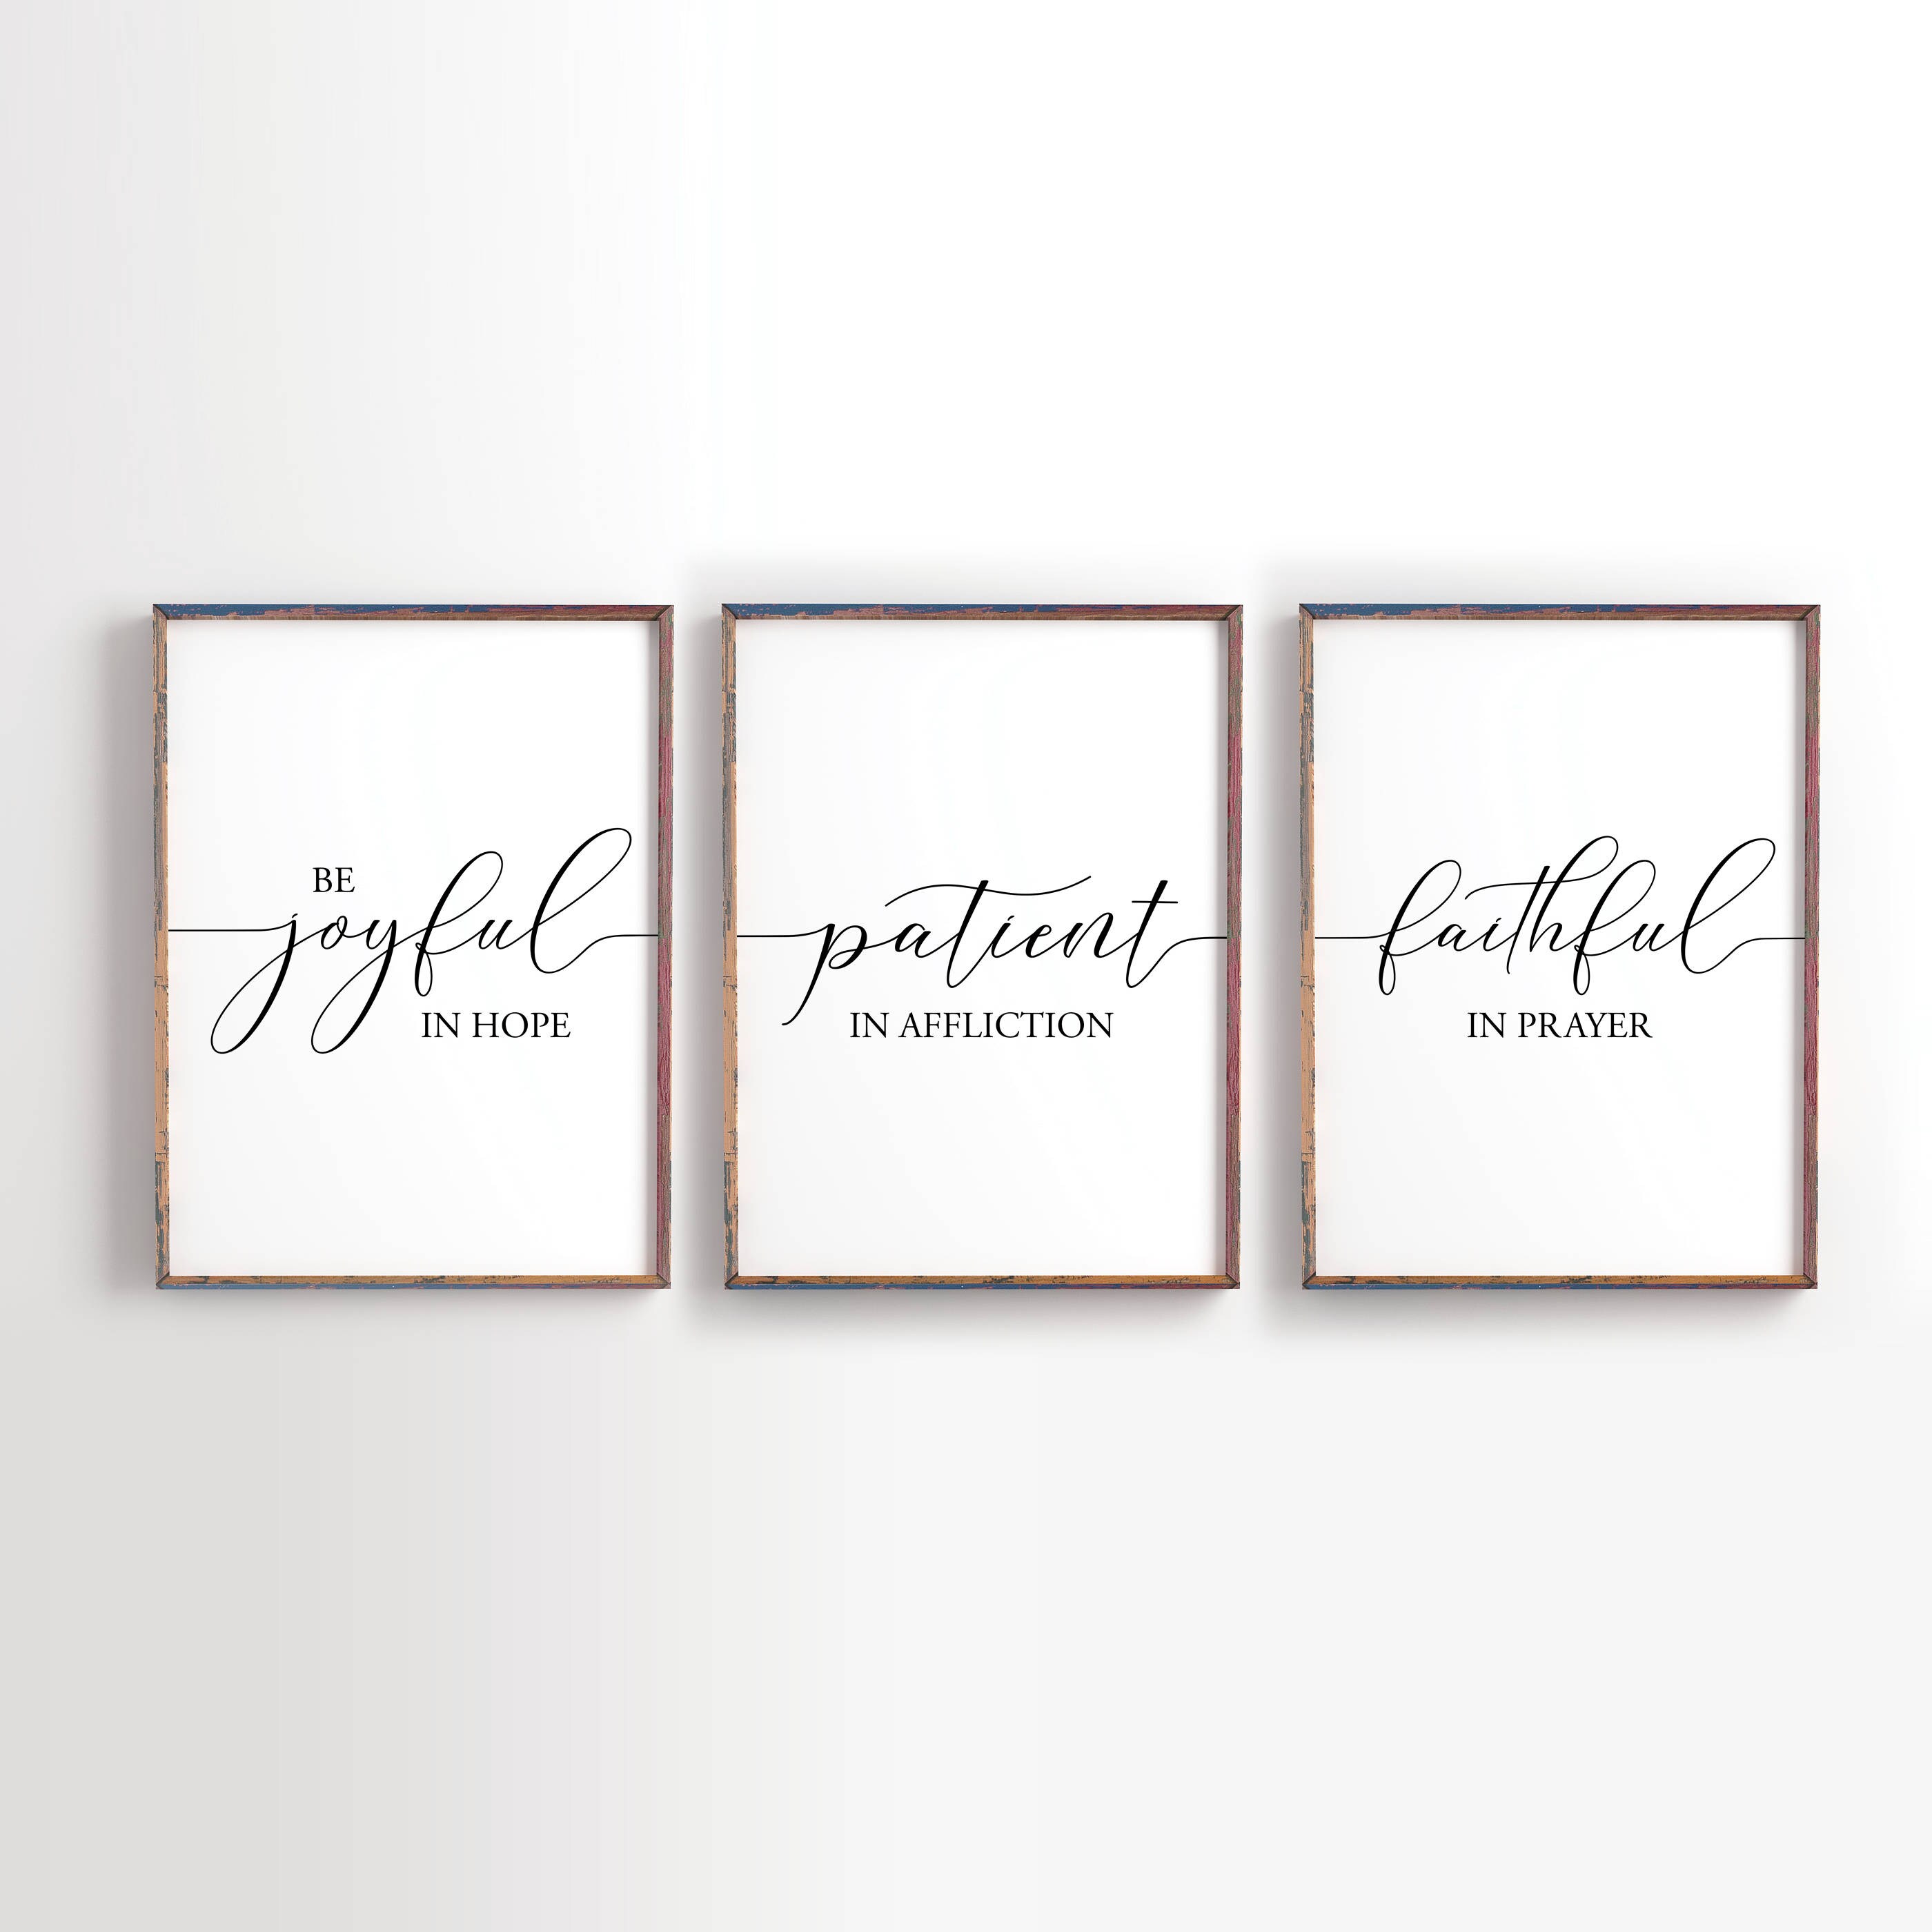 Woman of Faith Digital Journal Kit - Bible Study, Faithful, Prayer,  Christian